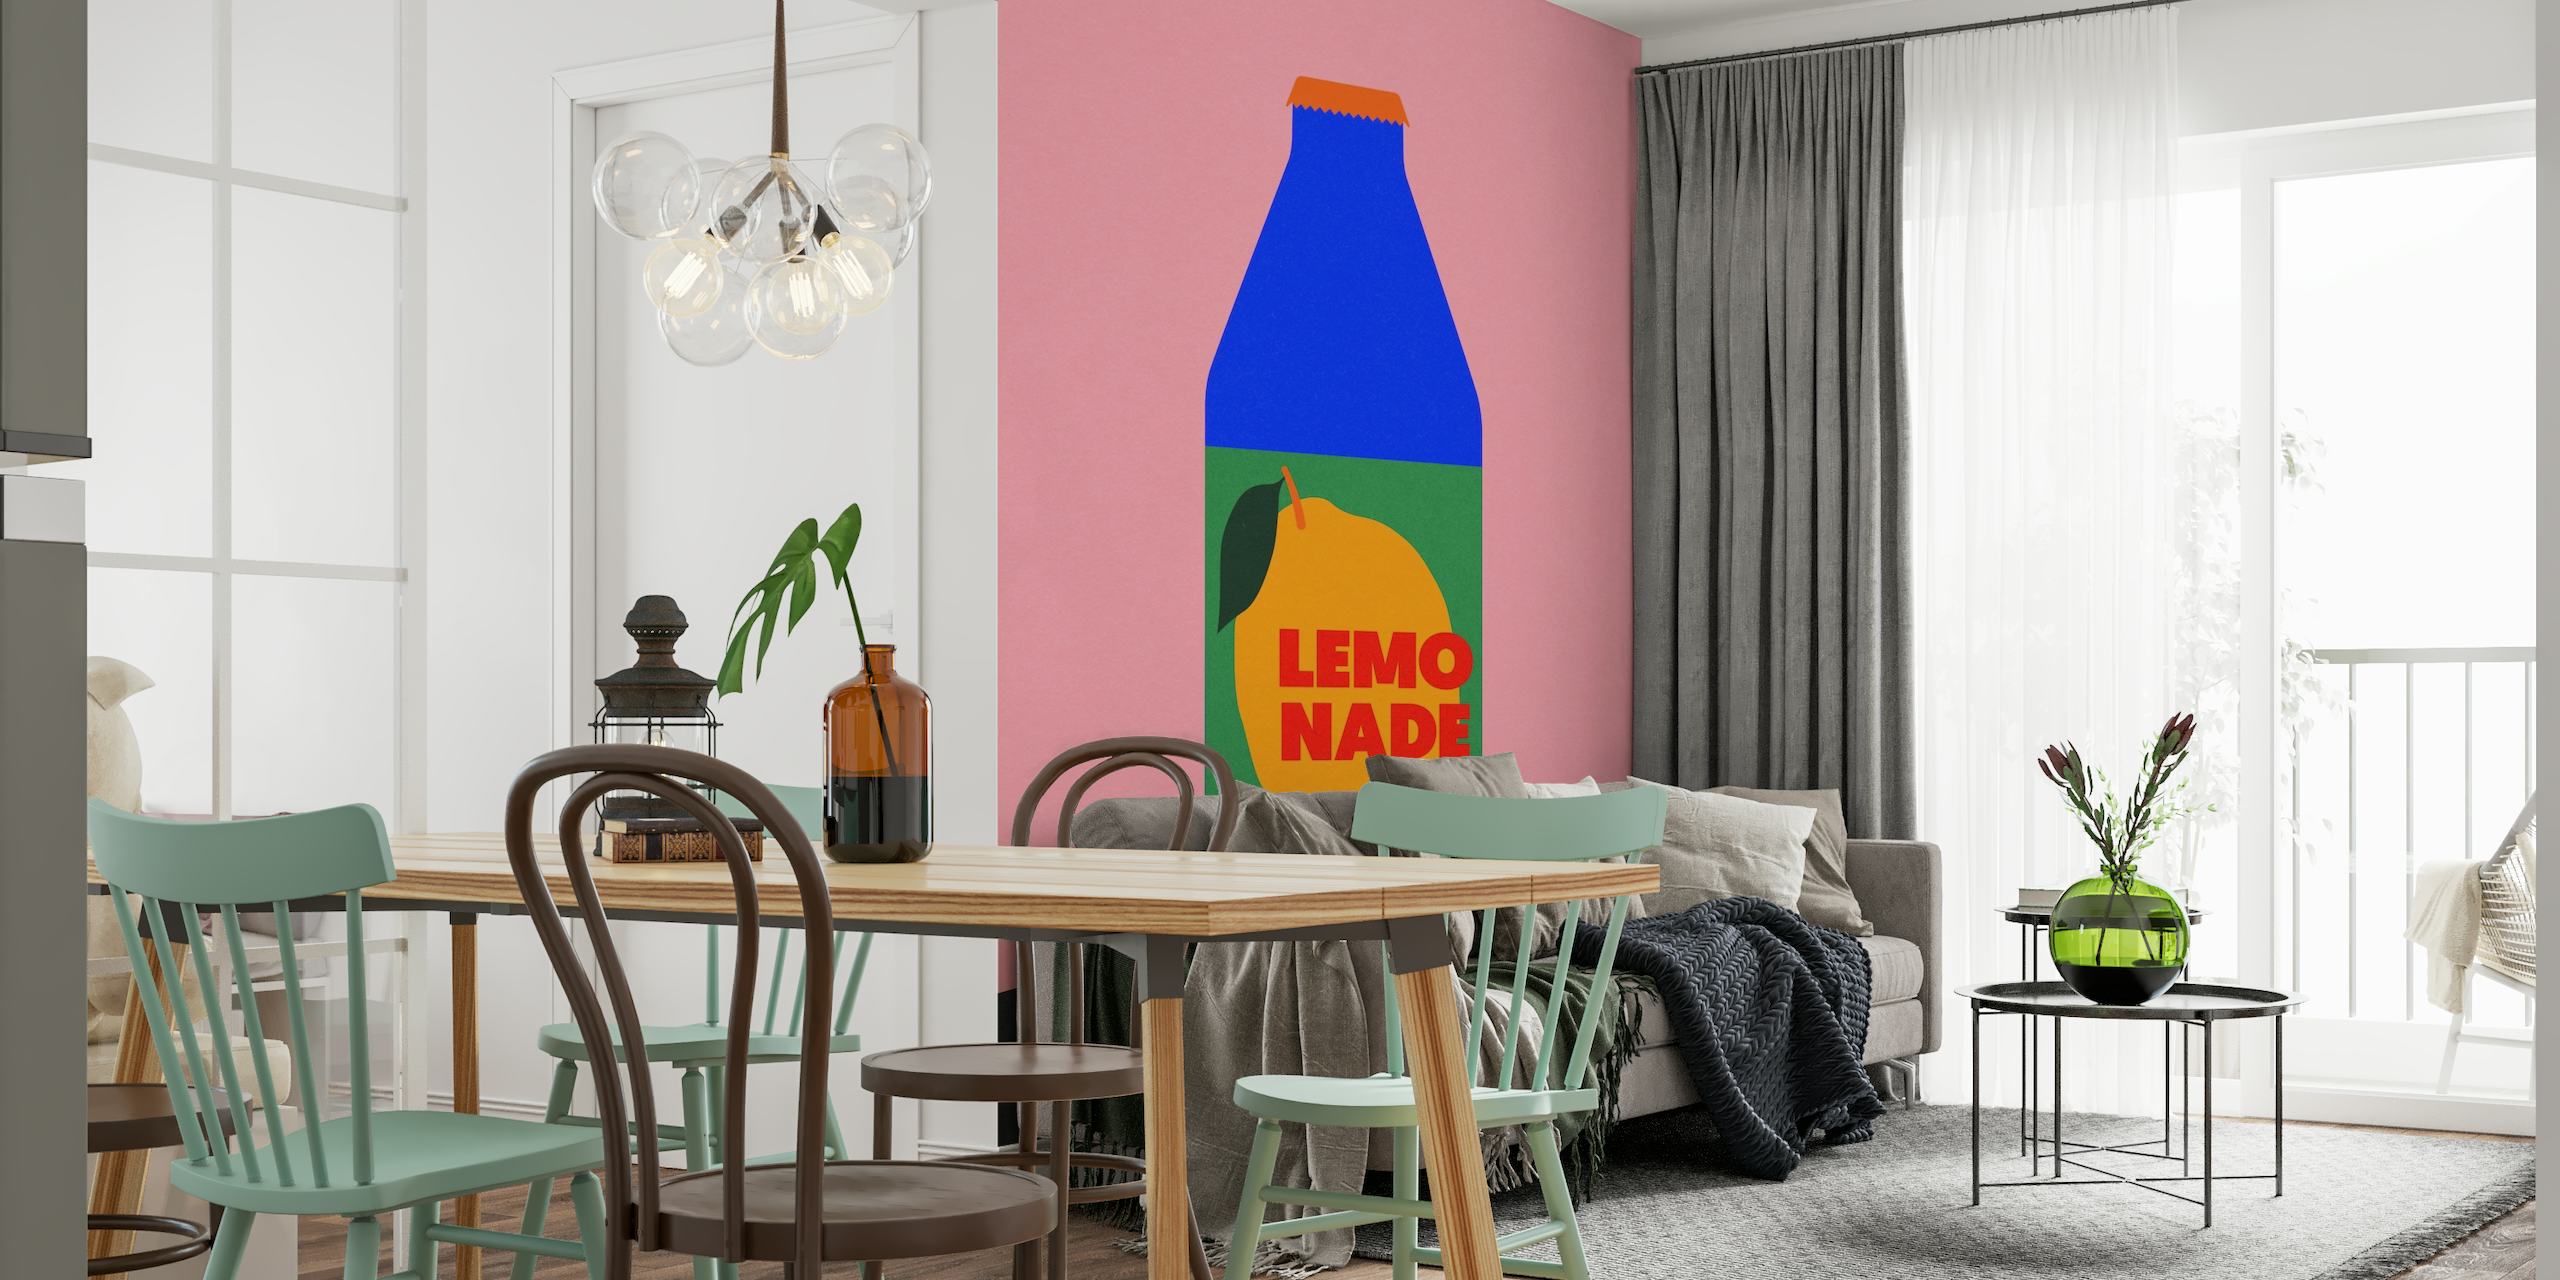 Moderne 'Lemo Nade' muurschildering met roze achtergrond en blauwe flesillustratie